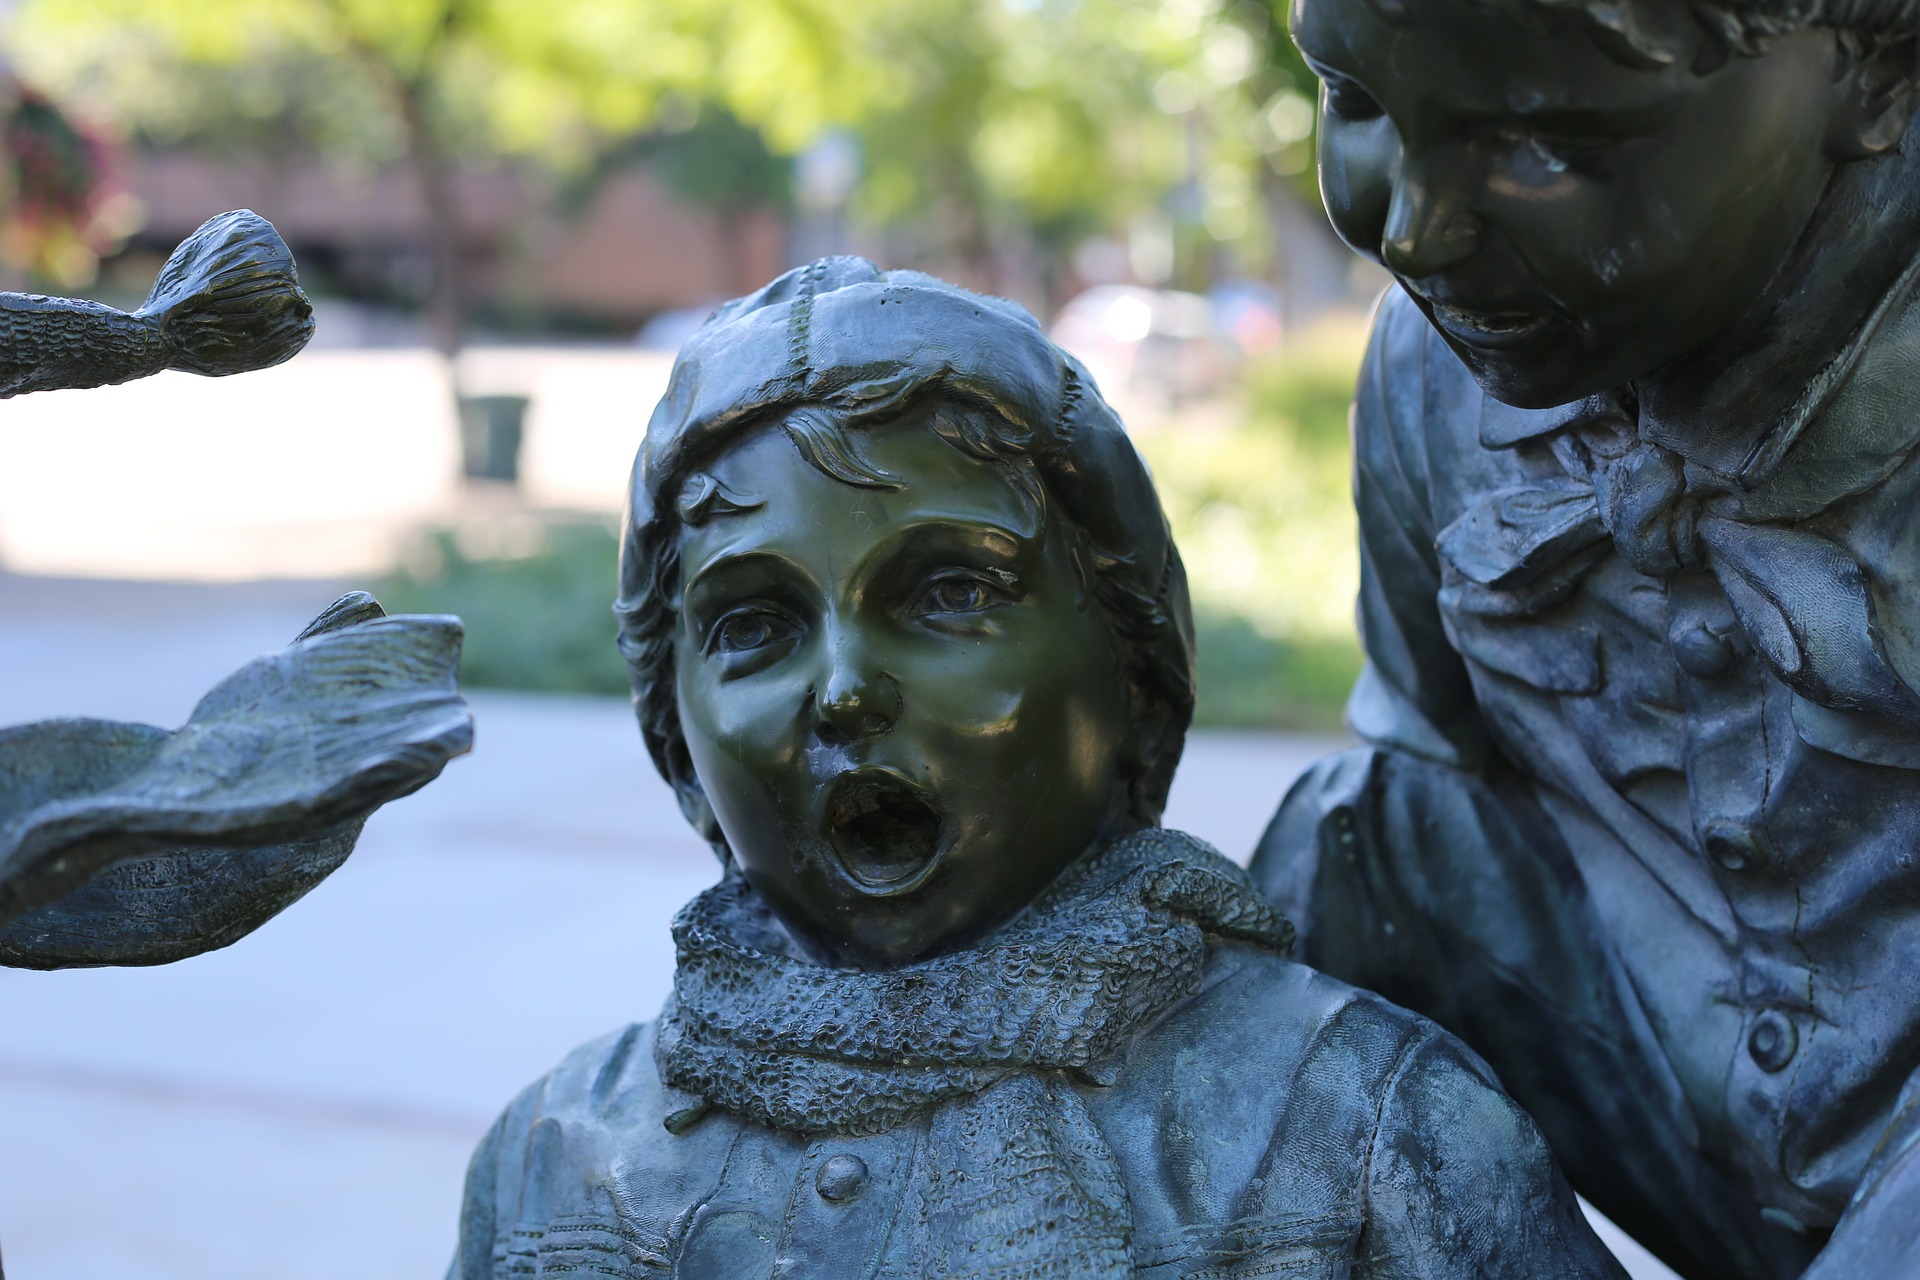 Eine Statue von einem Kind, das mit einem geschockten Gesichtsausdruck in die Kamera schaut.